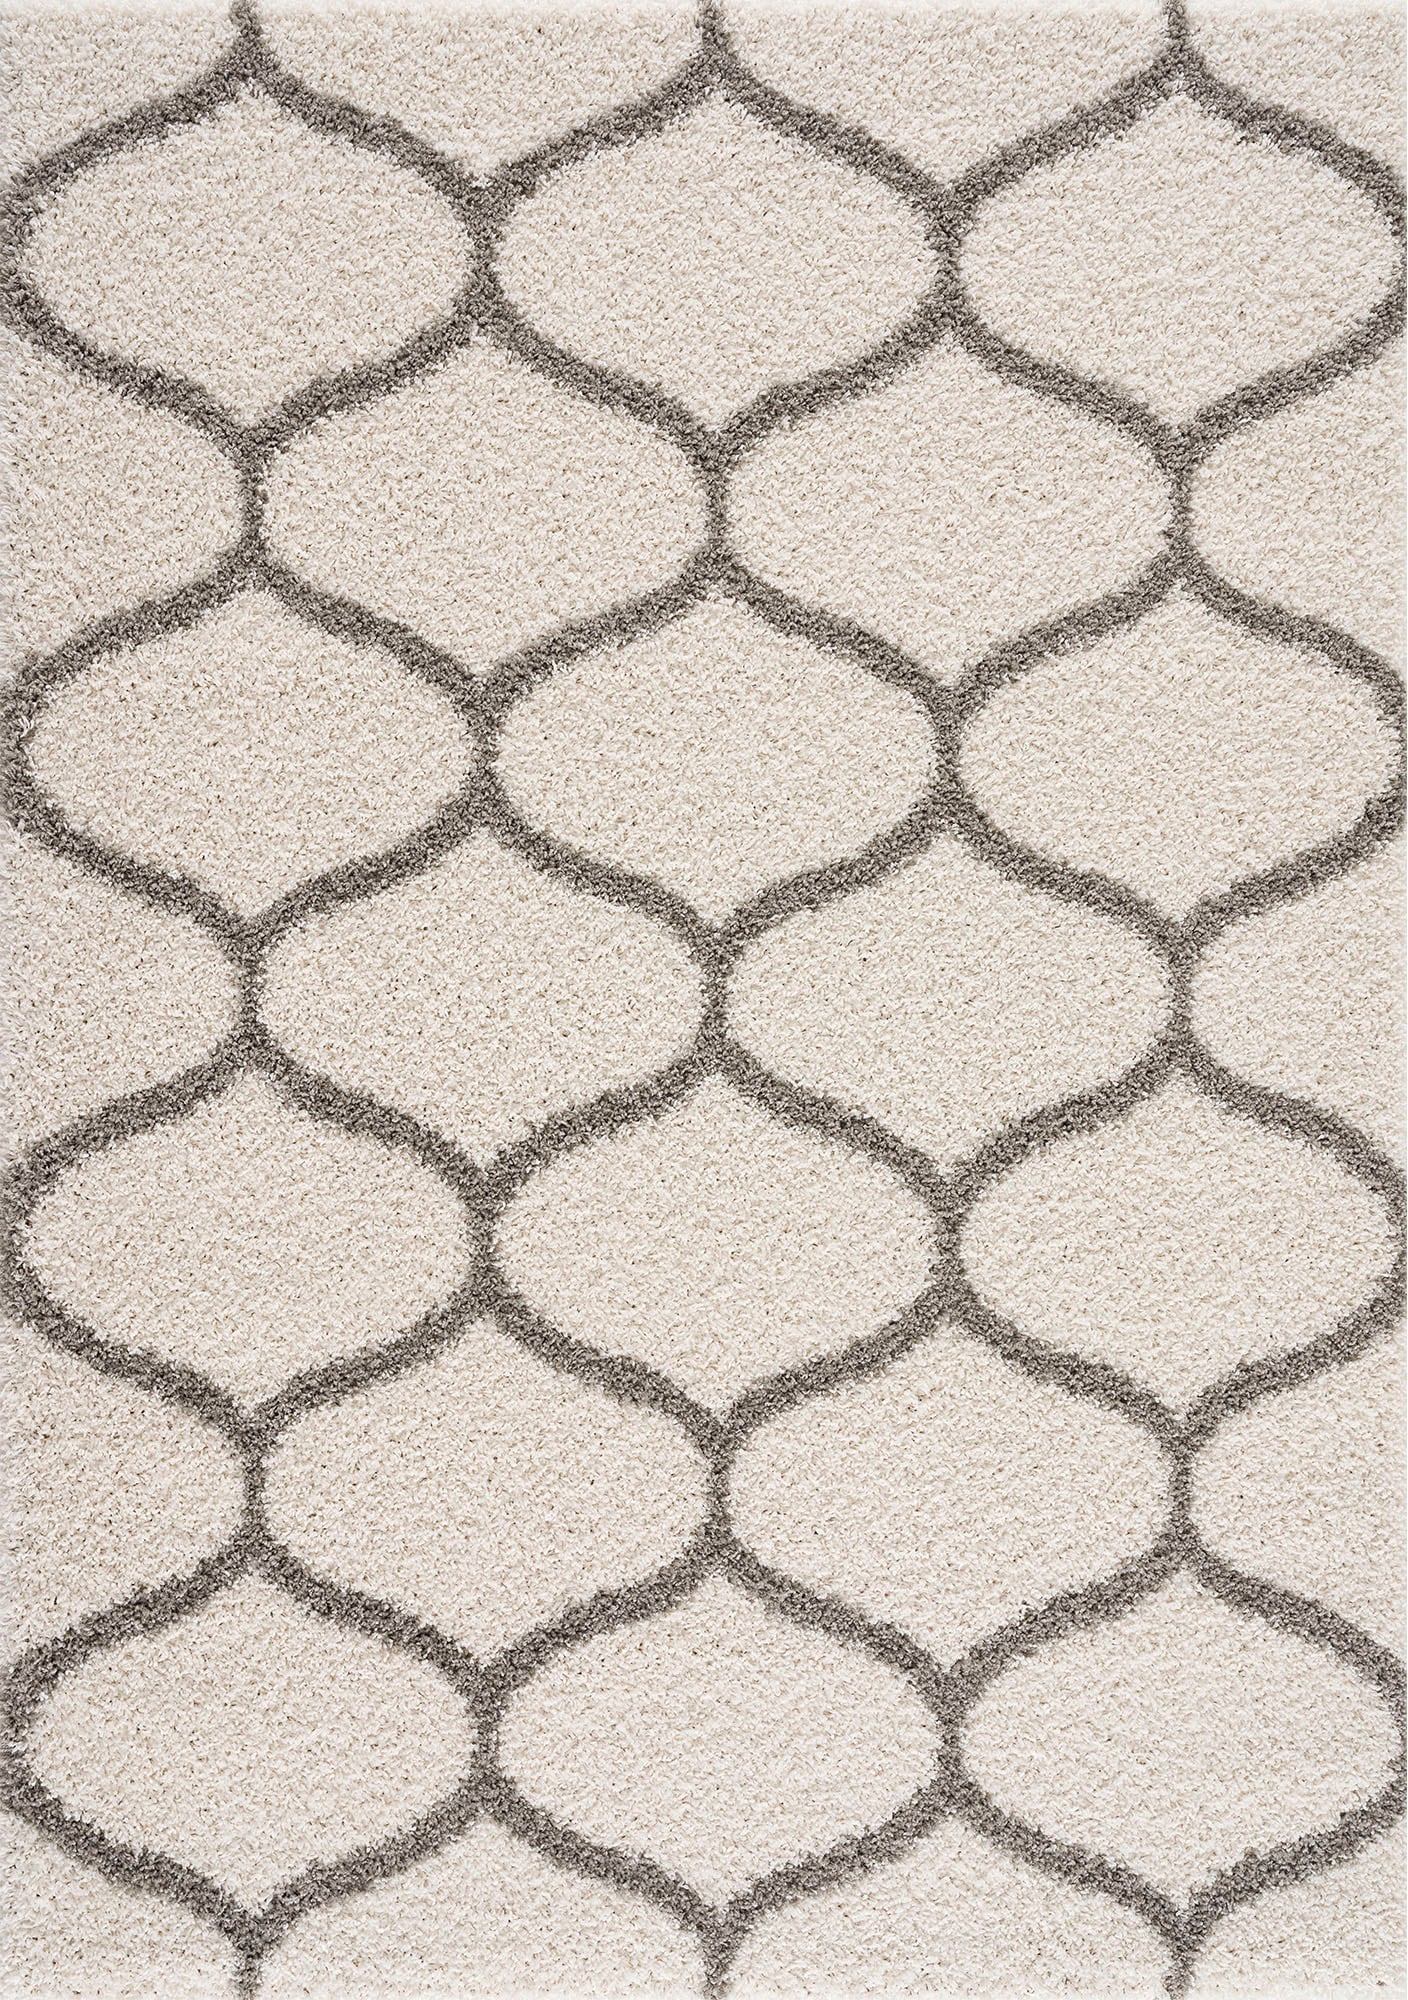 SANAT Shaggy Teppich - Hochflor Teppiche für Wohnzimmer, Schlafzimmer, Küche - Morocco Creme, Größe: 200x290 cm